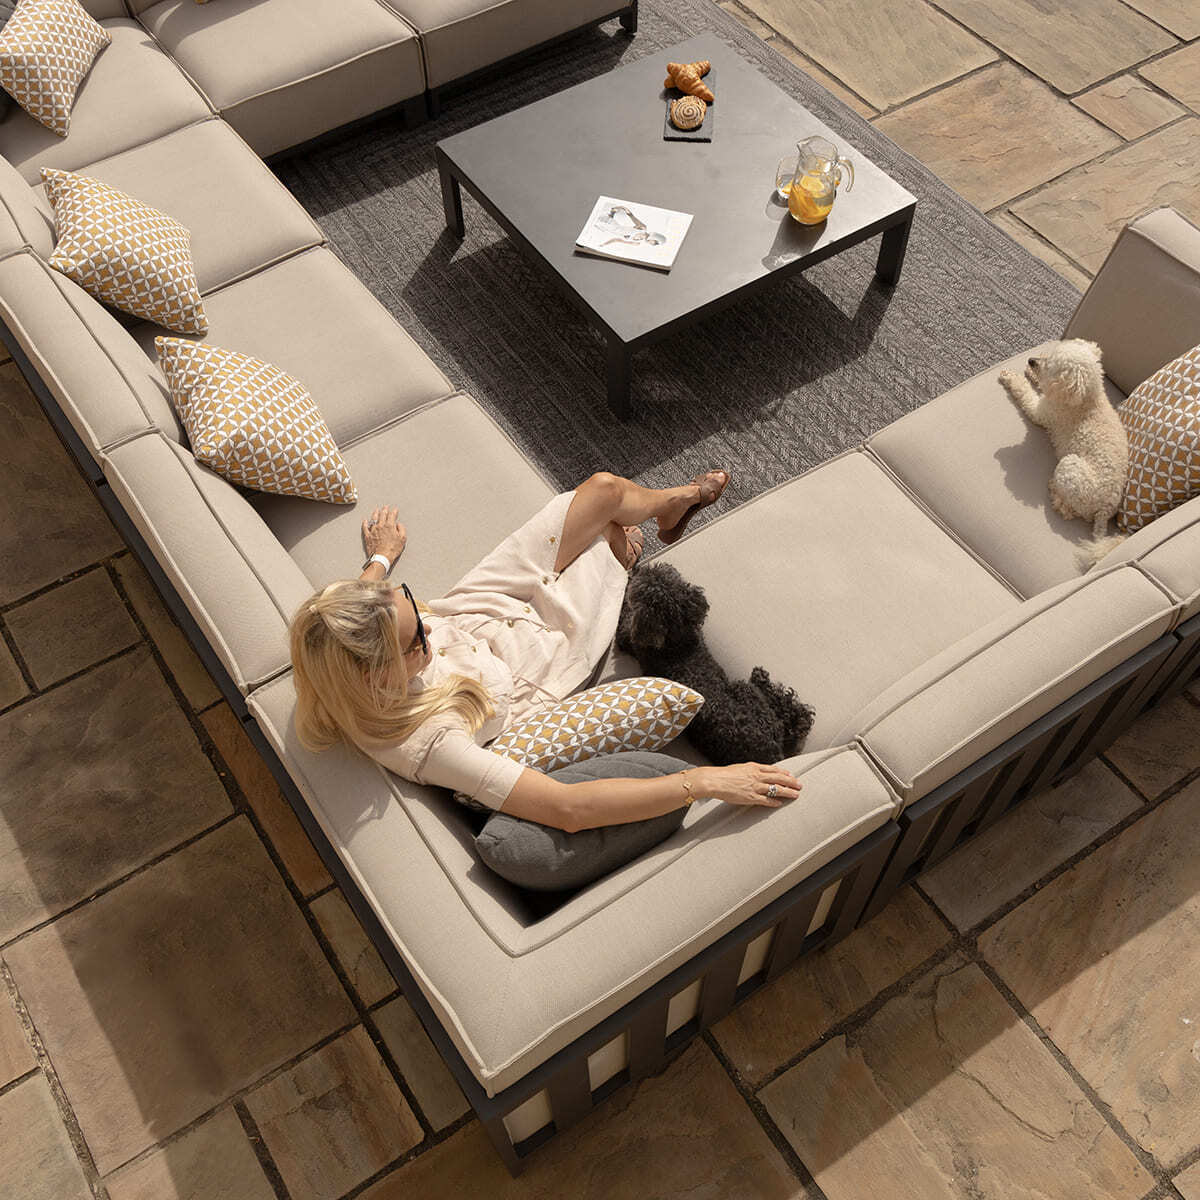 Maze - Outdoor Fabric Ibiza U Shape Sofa Set with Square Coffee Table - Oatmeal product image